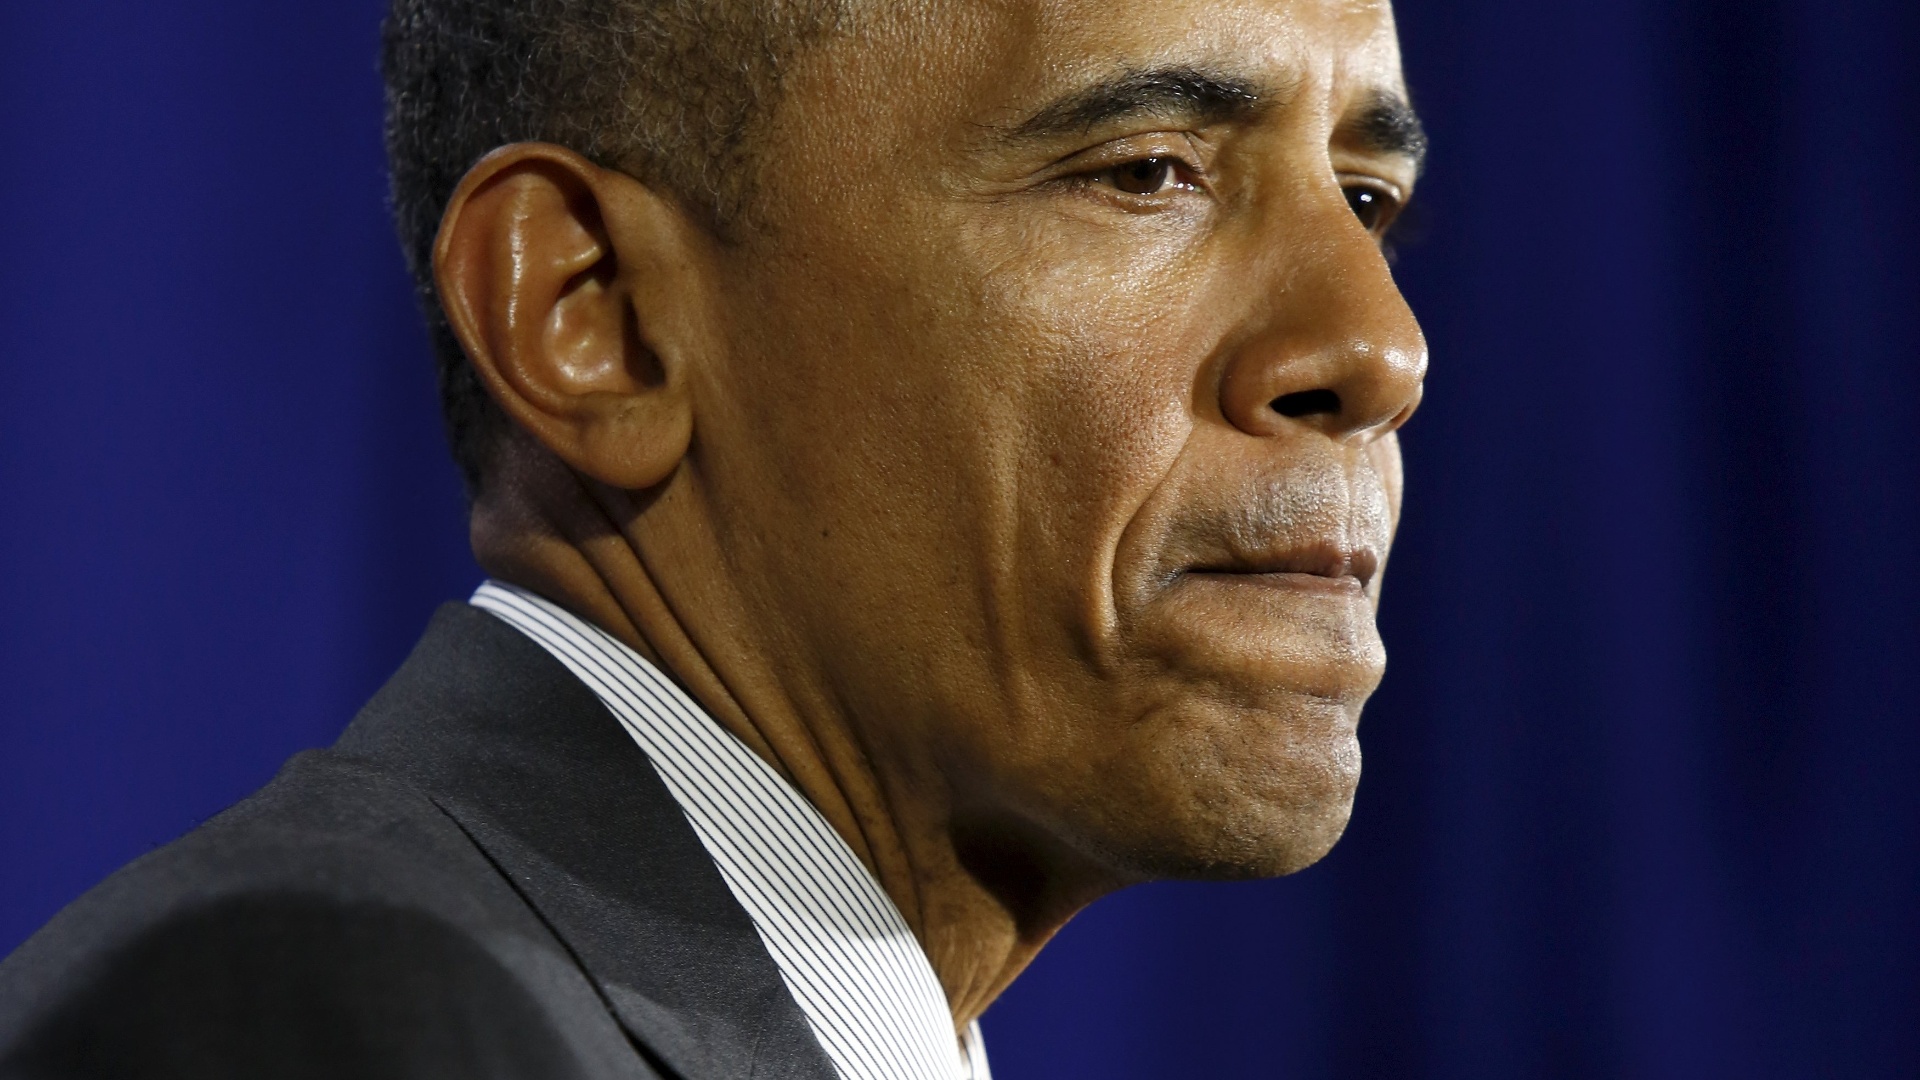 Obama classifica violência nos EUA como uma “epidemia”